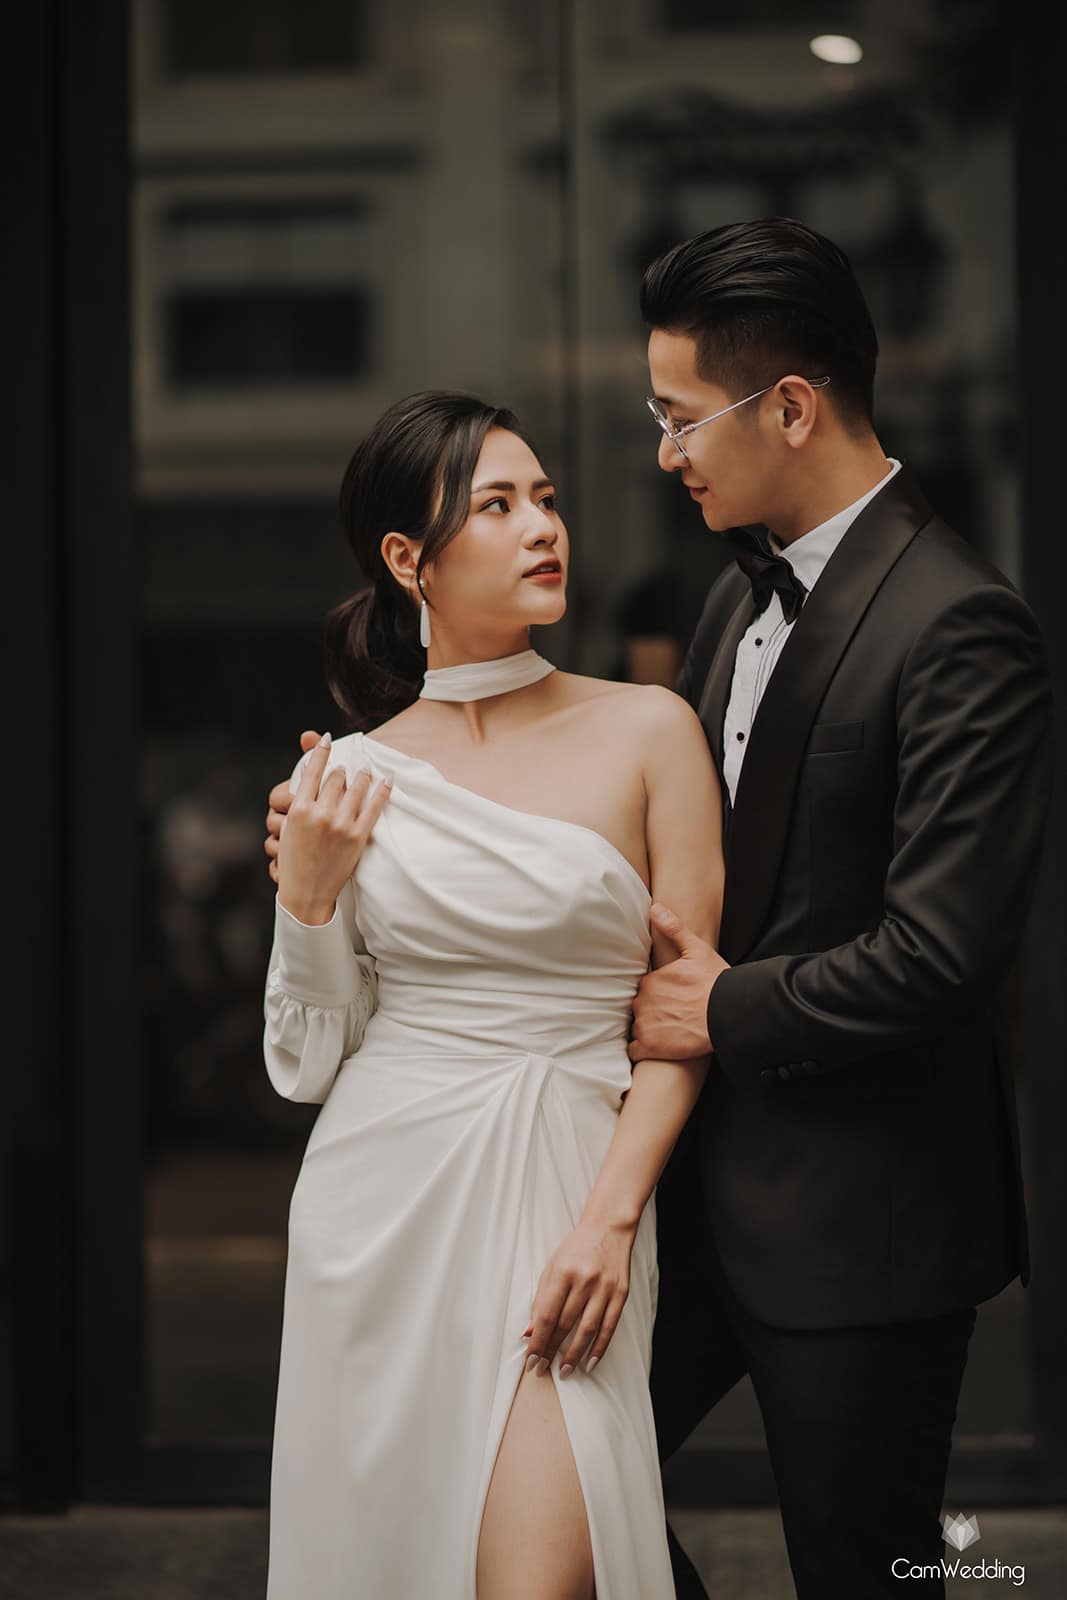 Việt Hoa 'Em gái Phương Oanh' tung bộ ảnh đẹp lung linh với bạn trai khiến netizen cứ ngỡ ảnh cưới - Ảnh 5